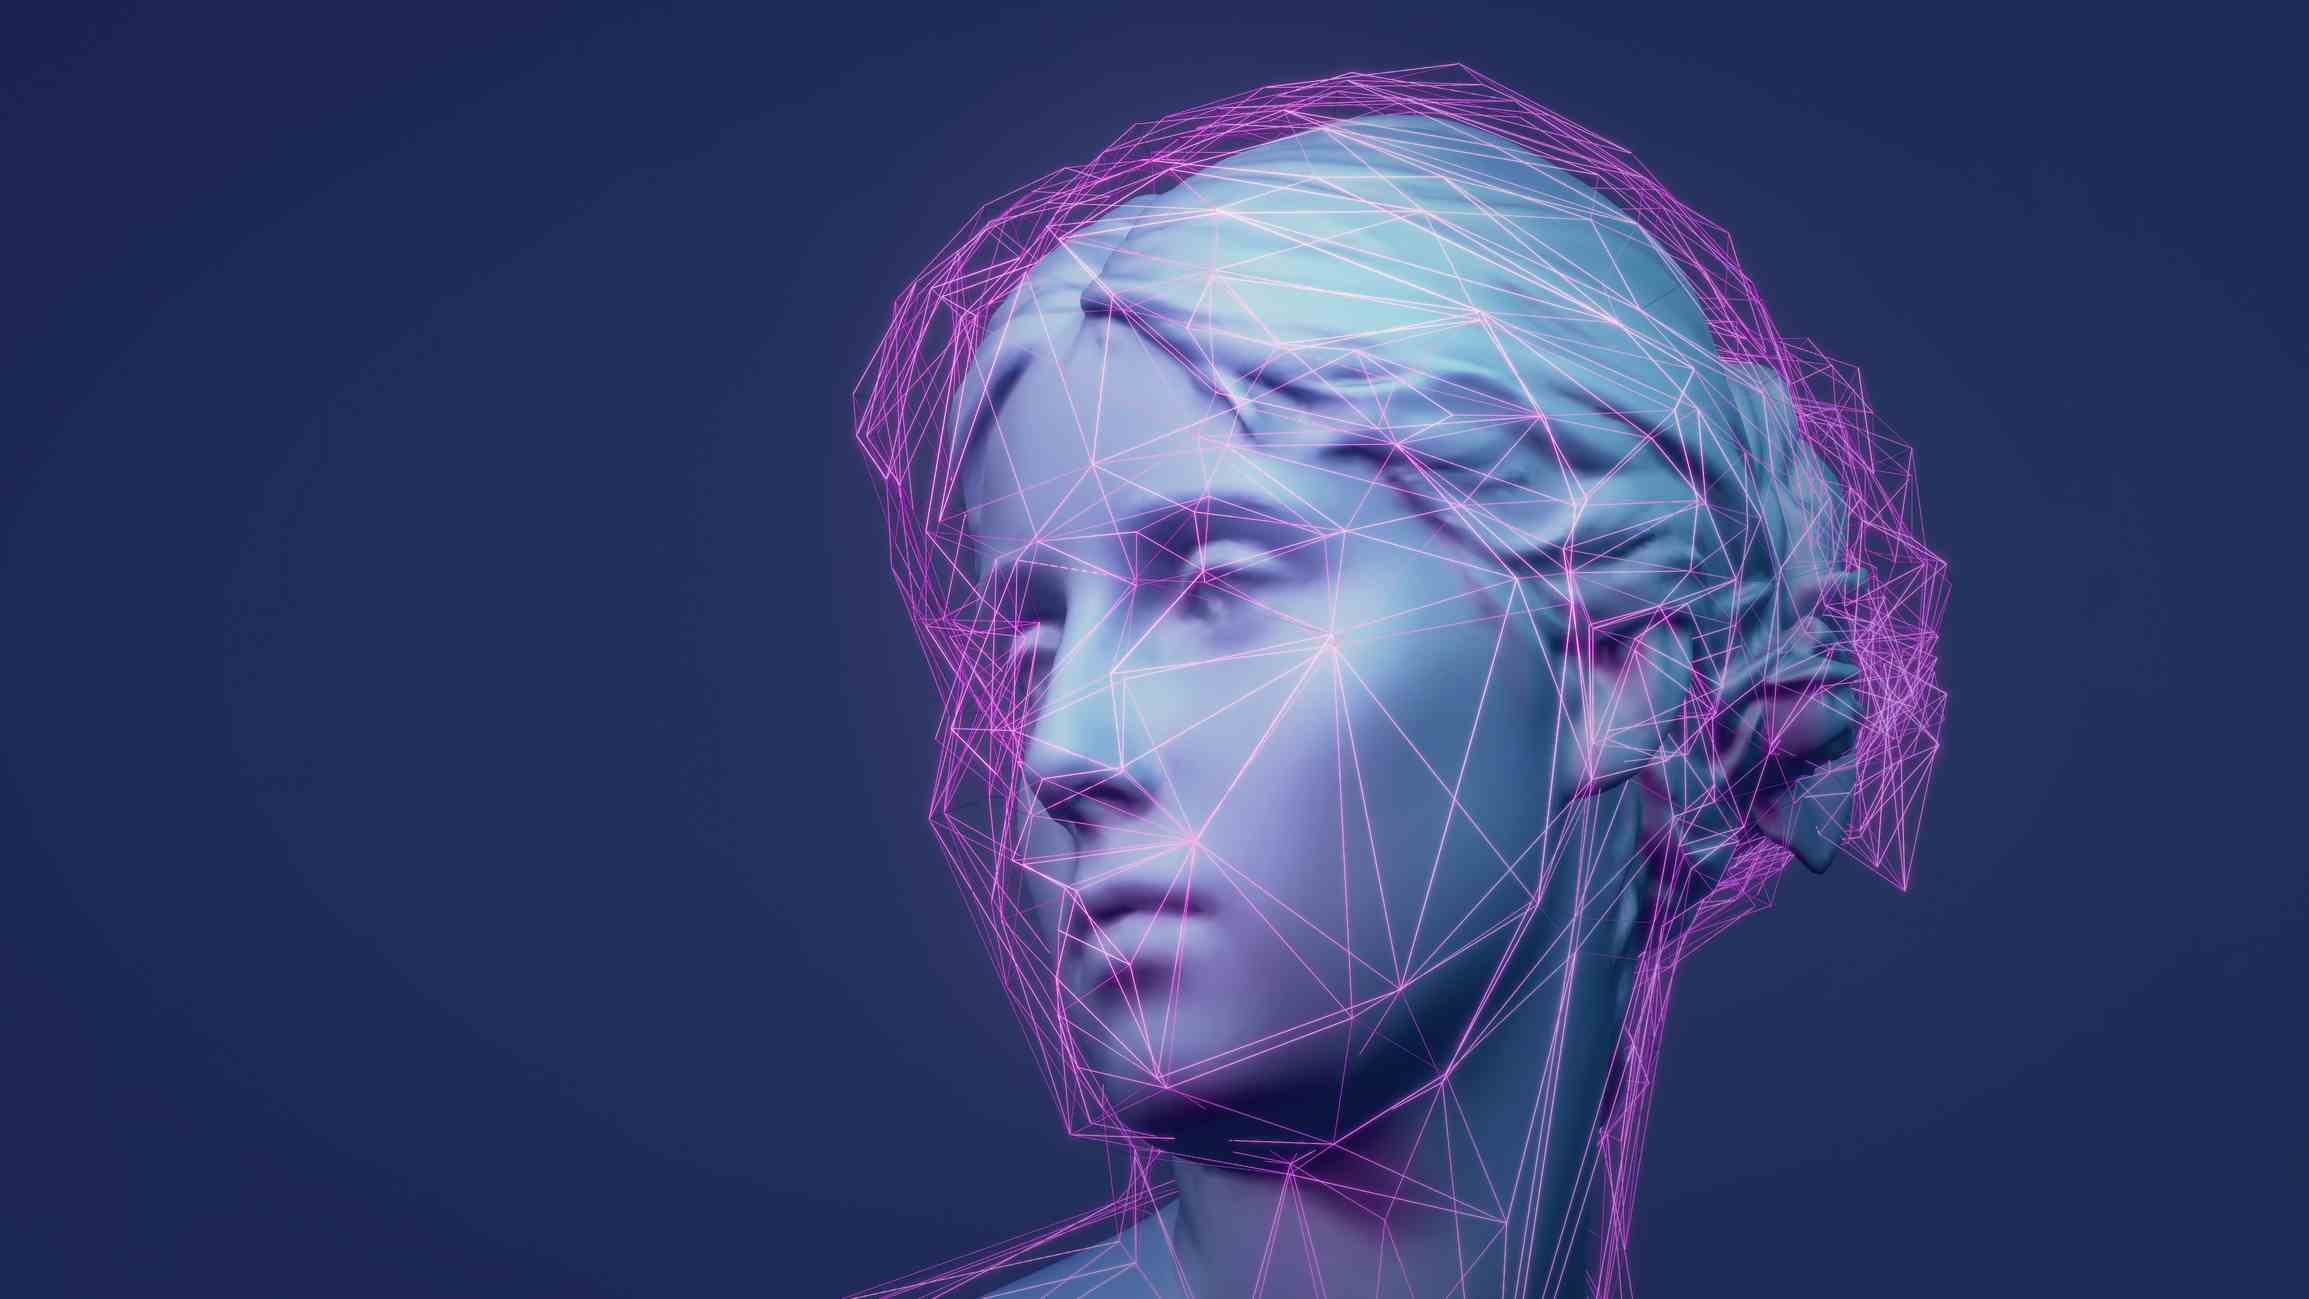 Sculpture classique en rendu 3D Avatar Metaverse avec réseau de lignes violettes brillantes low-poly.  Concept d'apprentissage automatique et d'intelligence artificielle.  Exemple d'illustration animée 3D NFT.  Fond de technologie Web 3.0.